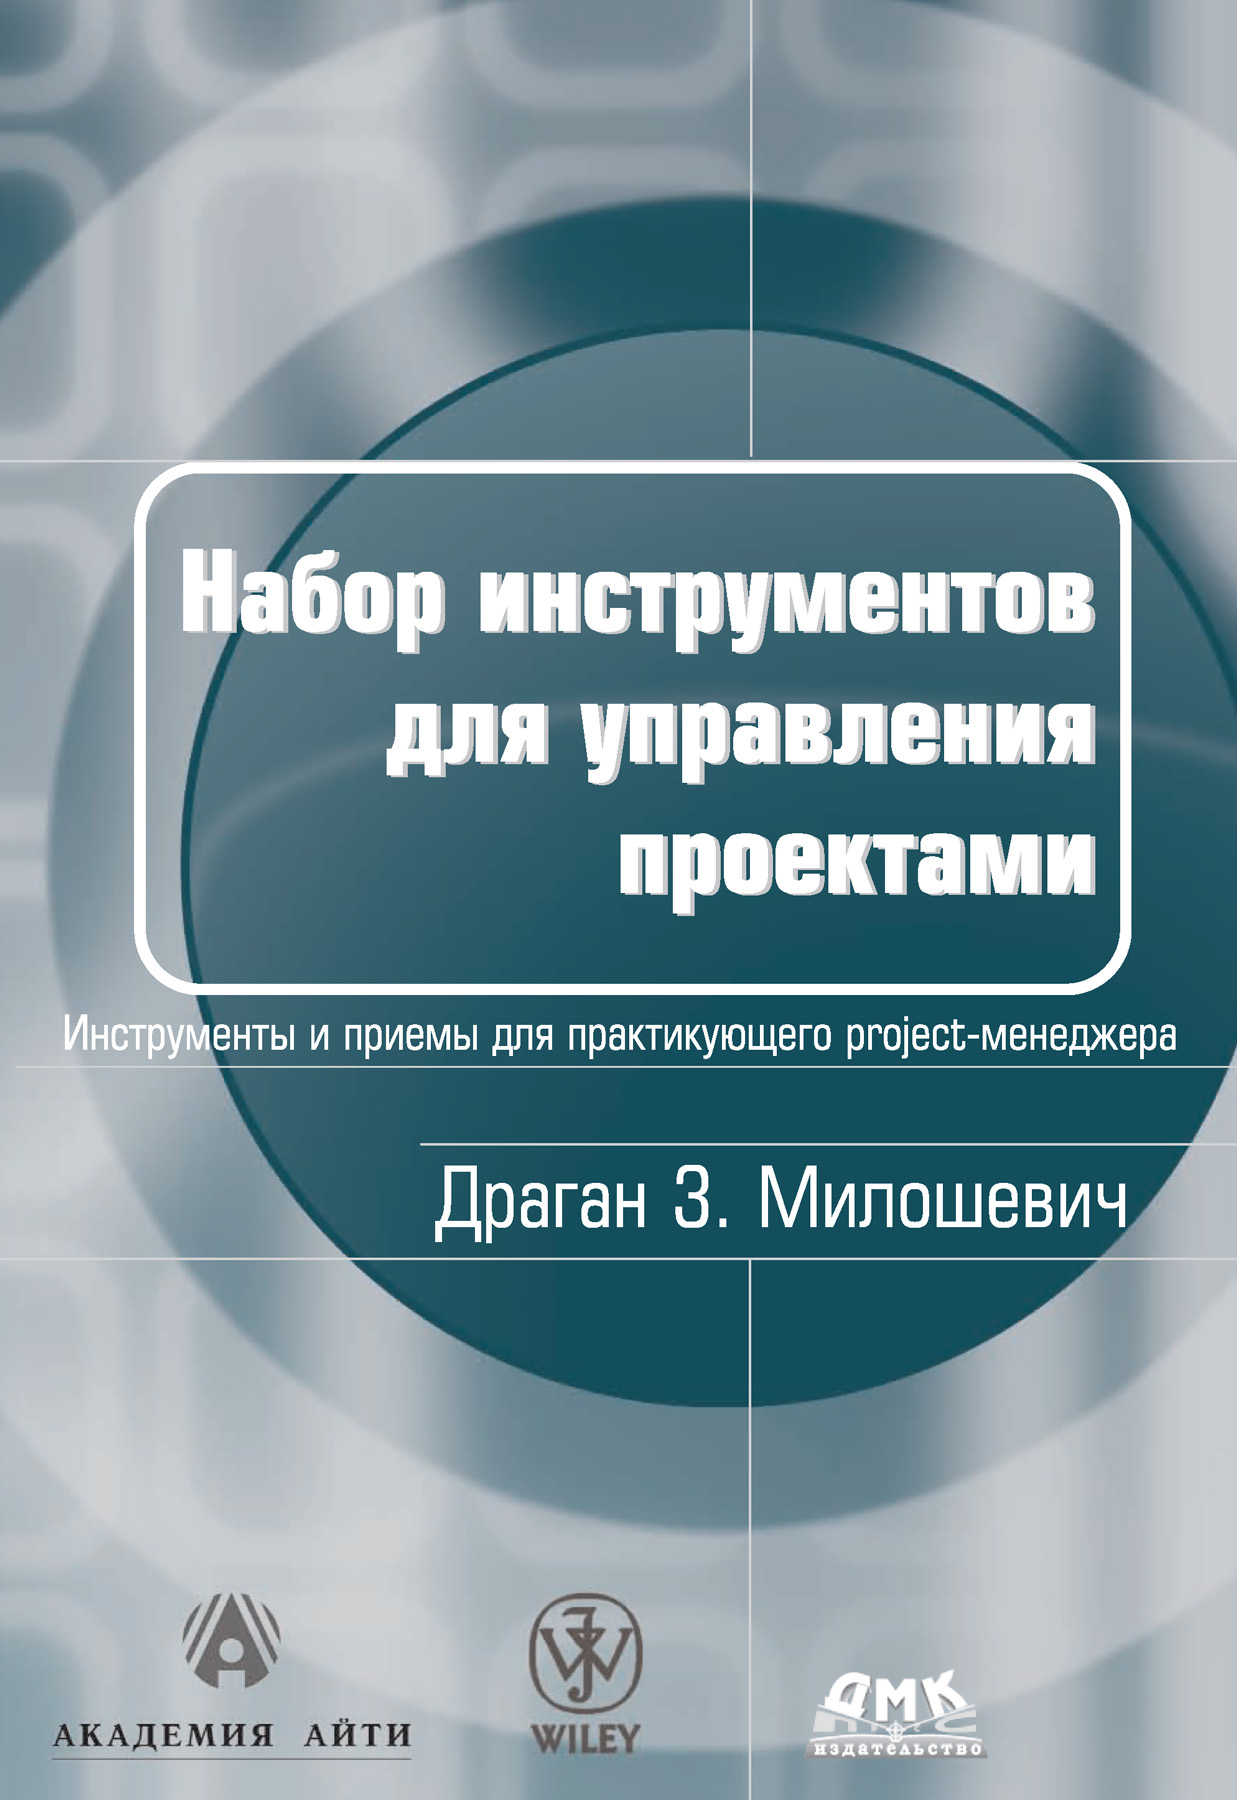 Обзор книги «Набор инструментов для управления проектами», автор Драган З. Милошевич.